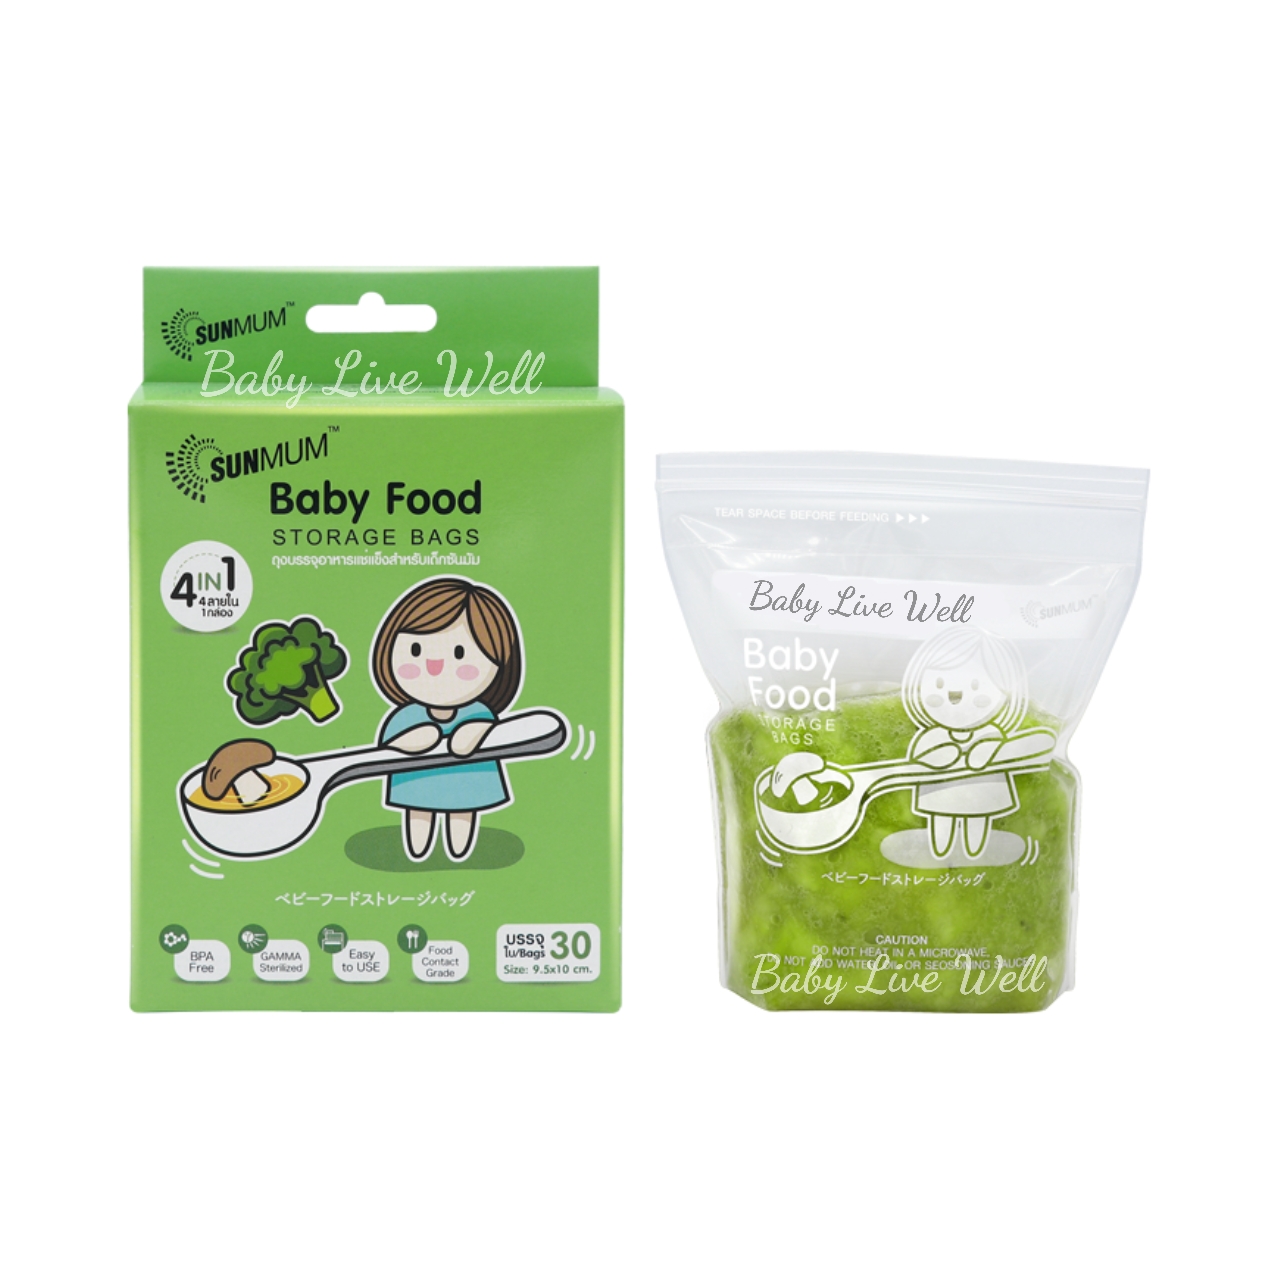 ภาพอธิบายเพิ่มเติมของ ซันมัม ถุงบรรจุอาหารแช่แข็งสำหรับเด็ก 1 กล่อง - S Baby Food Storage Bags